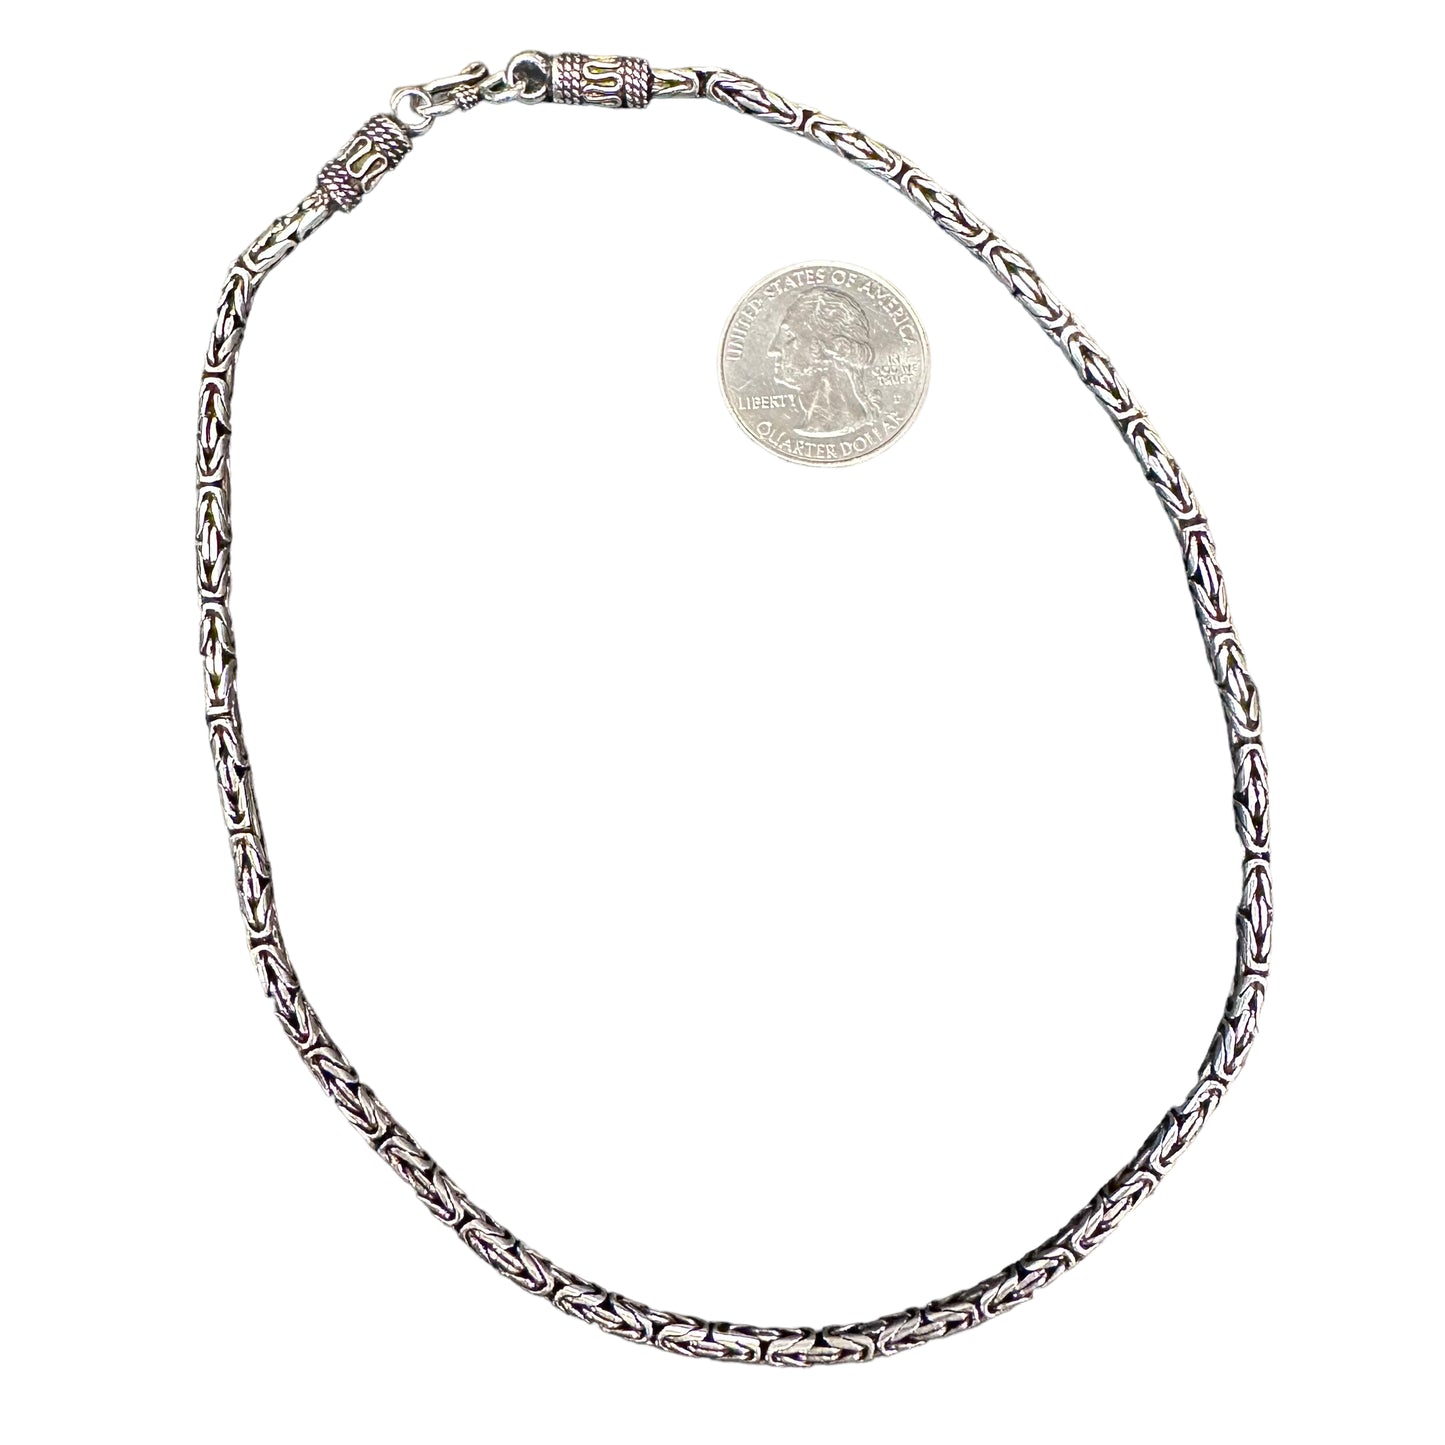 Bali Byzantine 3.5mm Sterling Silver Bracelet Chain Necklace